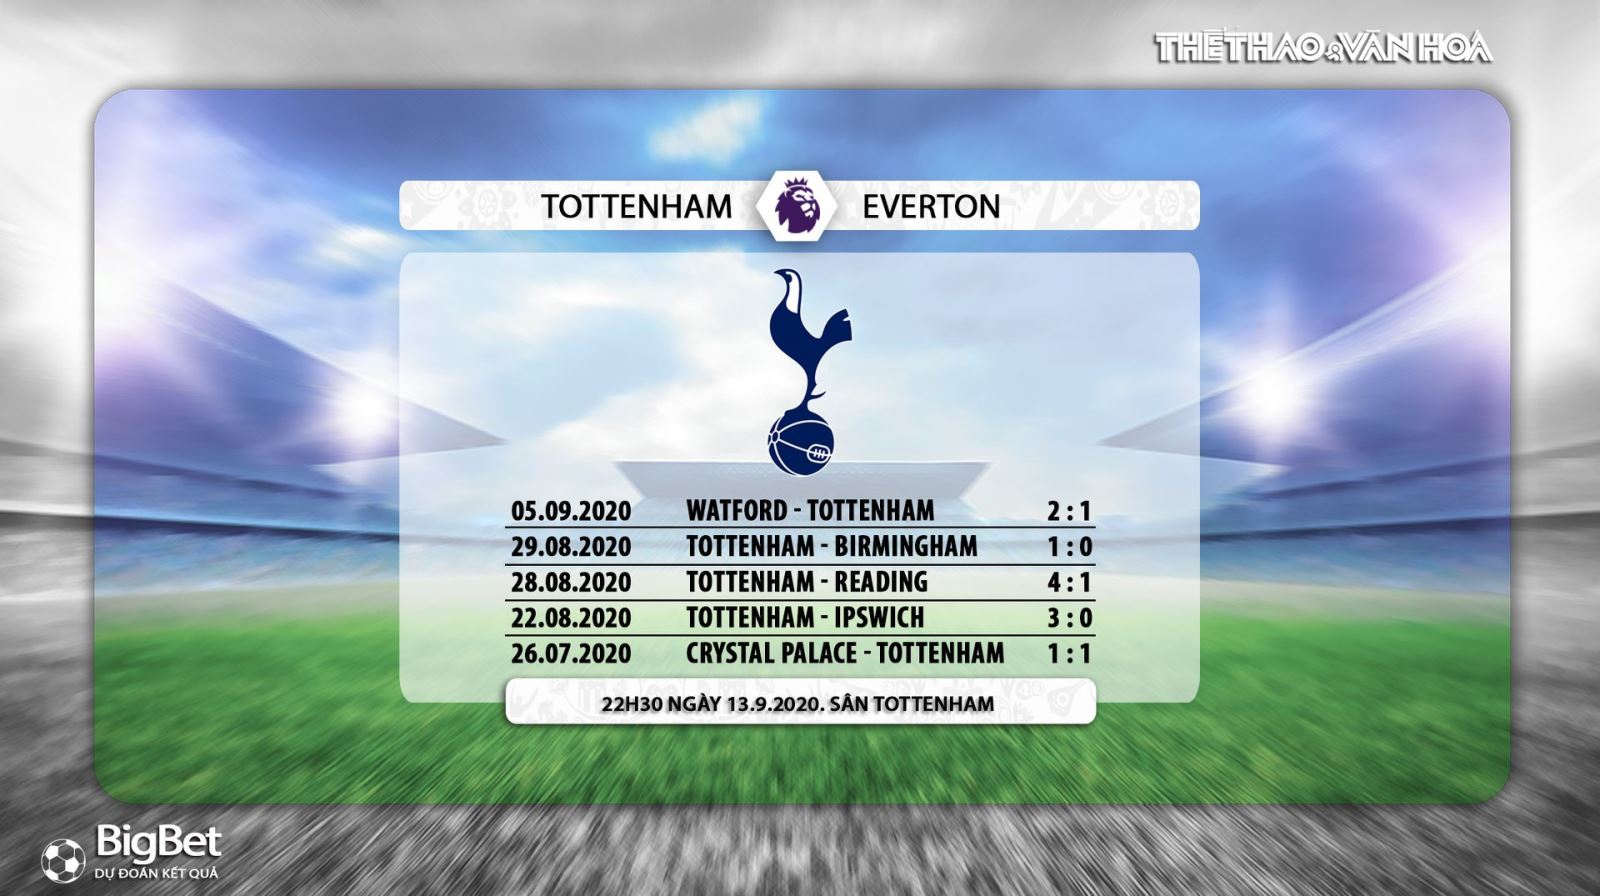 Tottenham vs Everton, Tottenham, Everton, nhận định bóng đá, kèo bóng đá, nhận định bóng đá Tottenham vs Everton, nhận định, kèo bóng đá